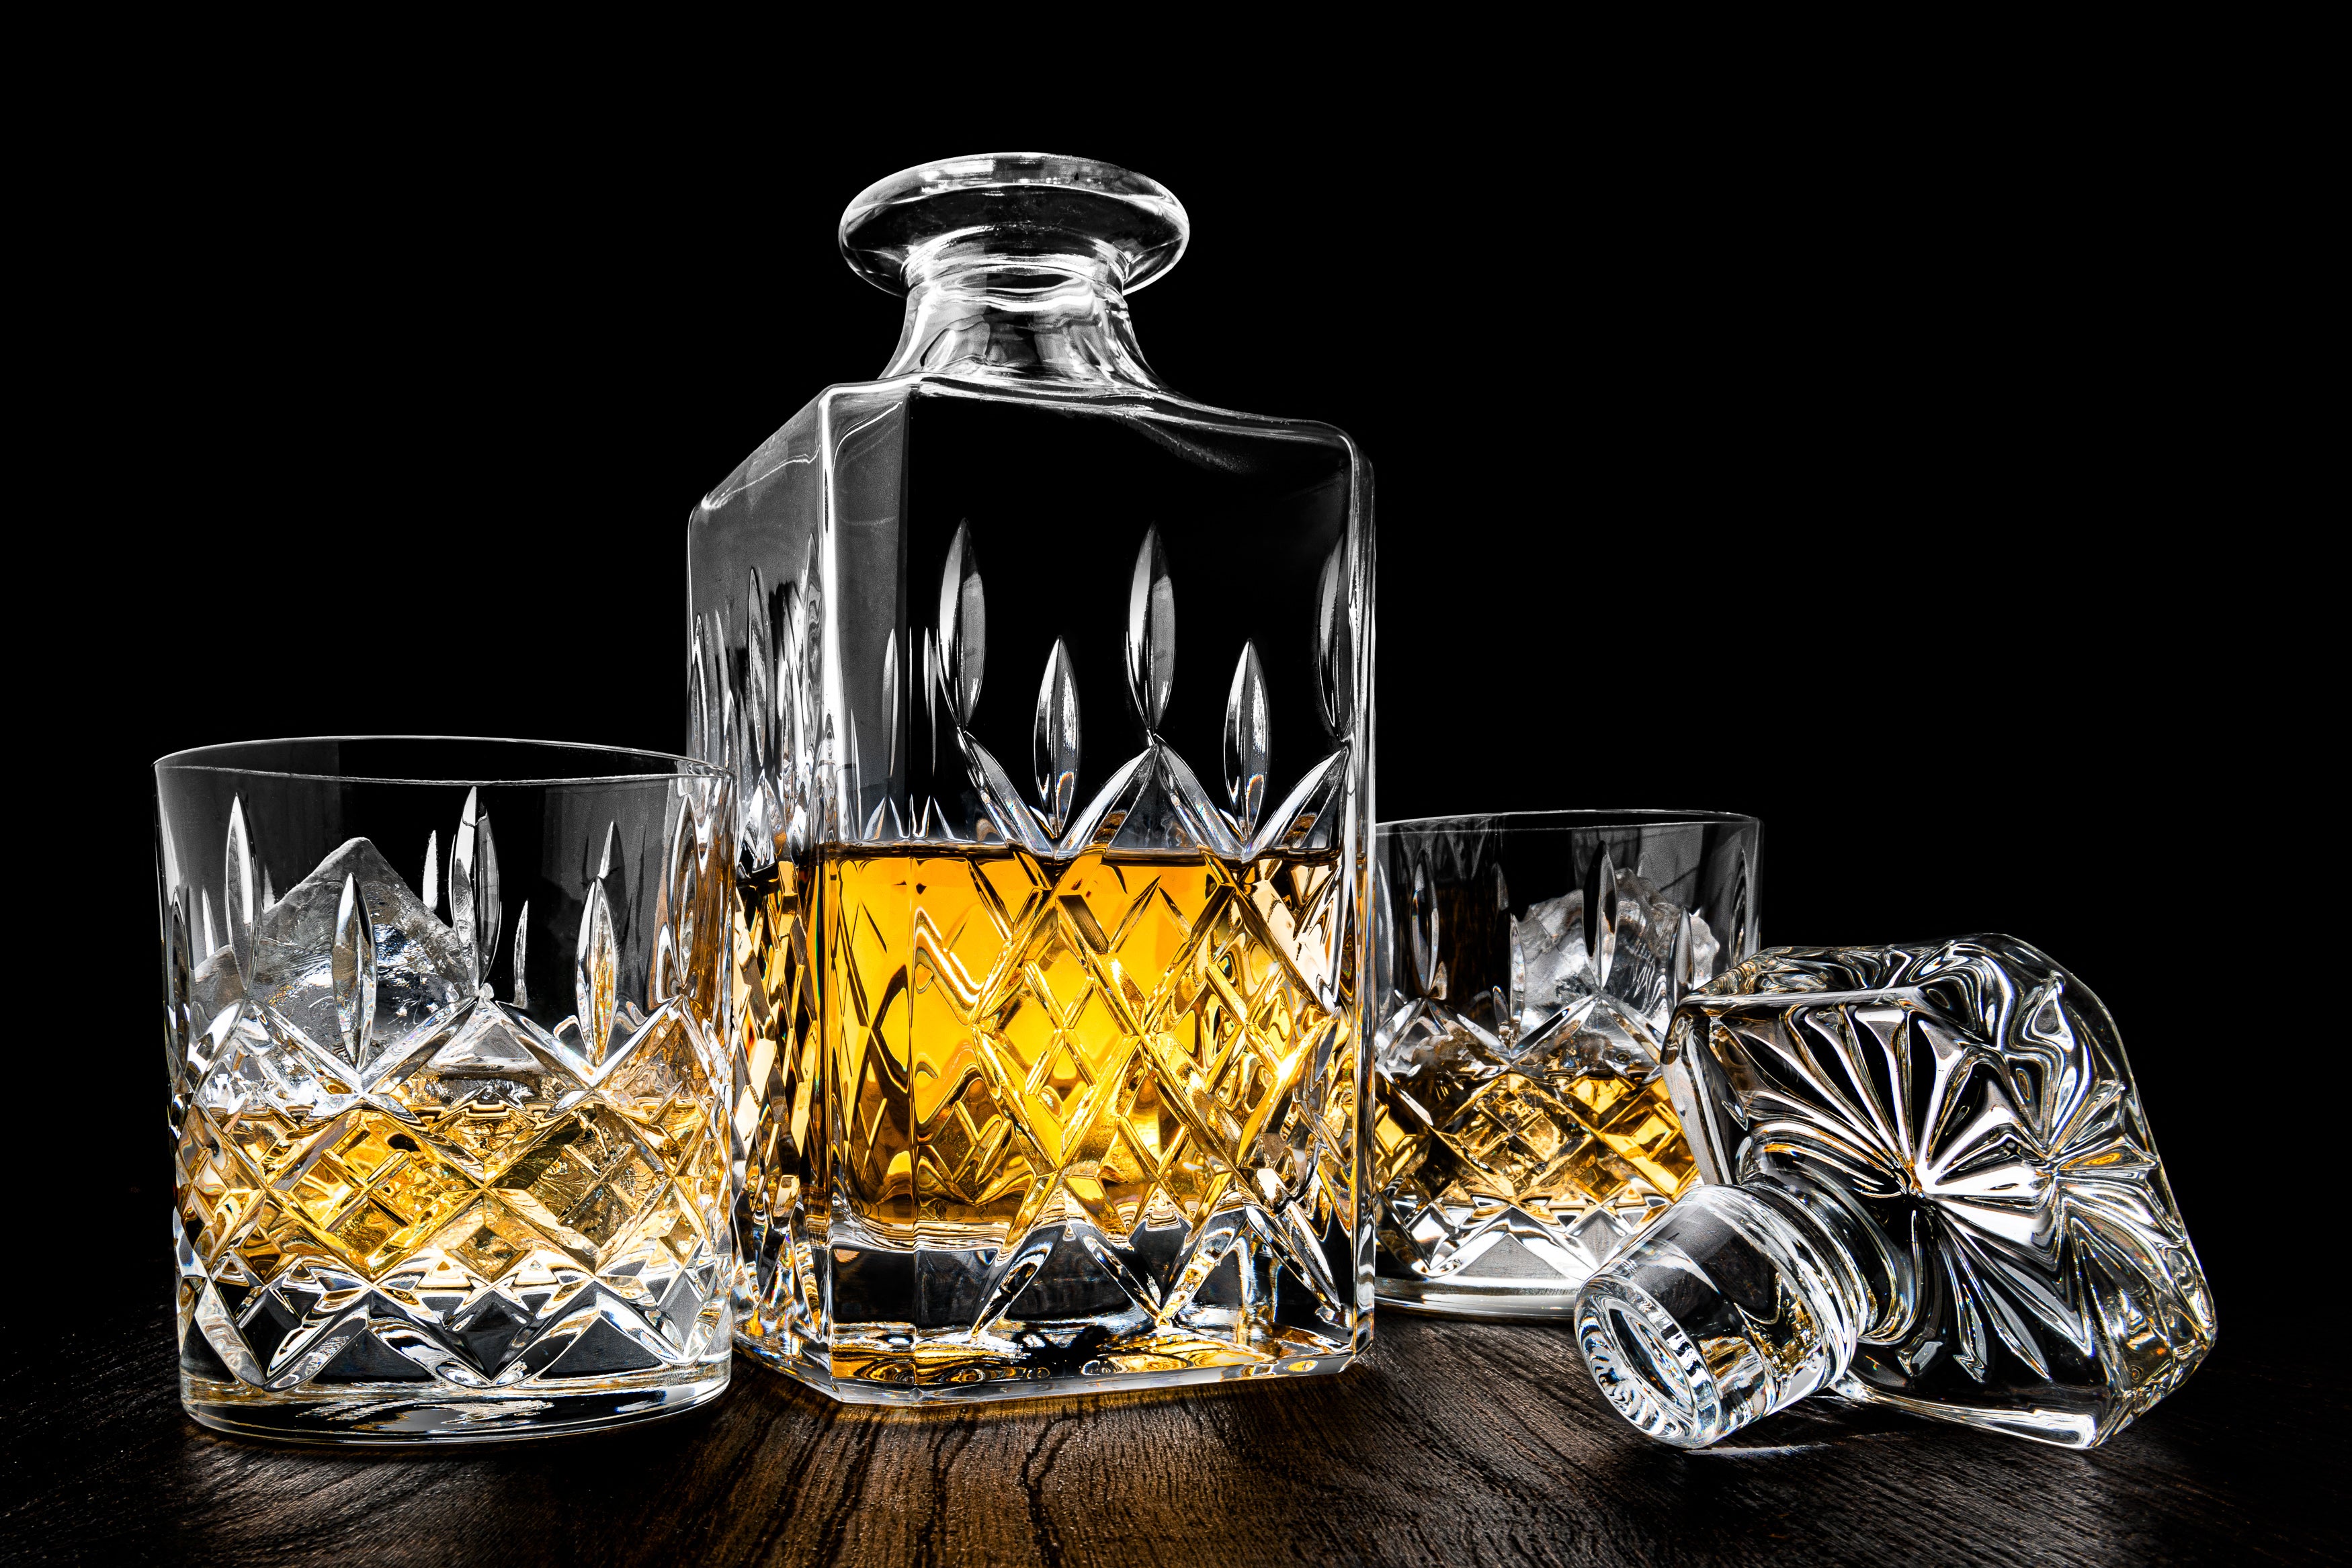 Limited Edition Whiskey Karaf | Handgemaakt